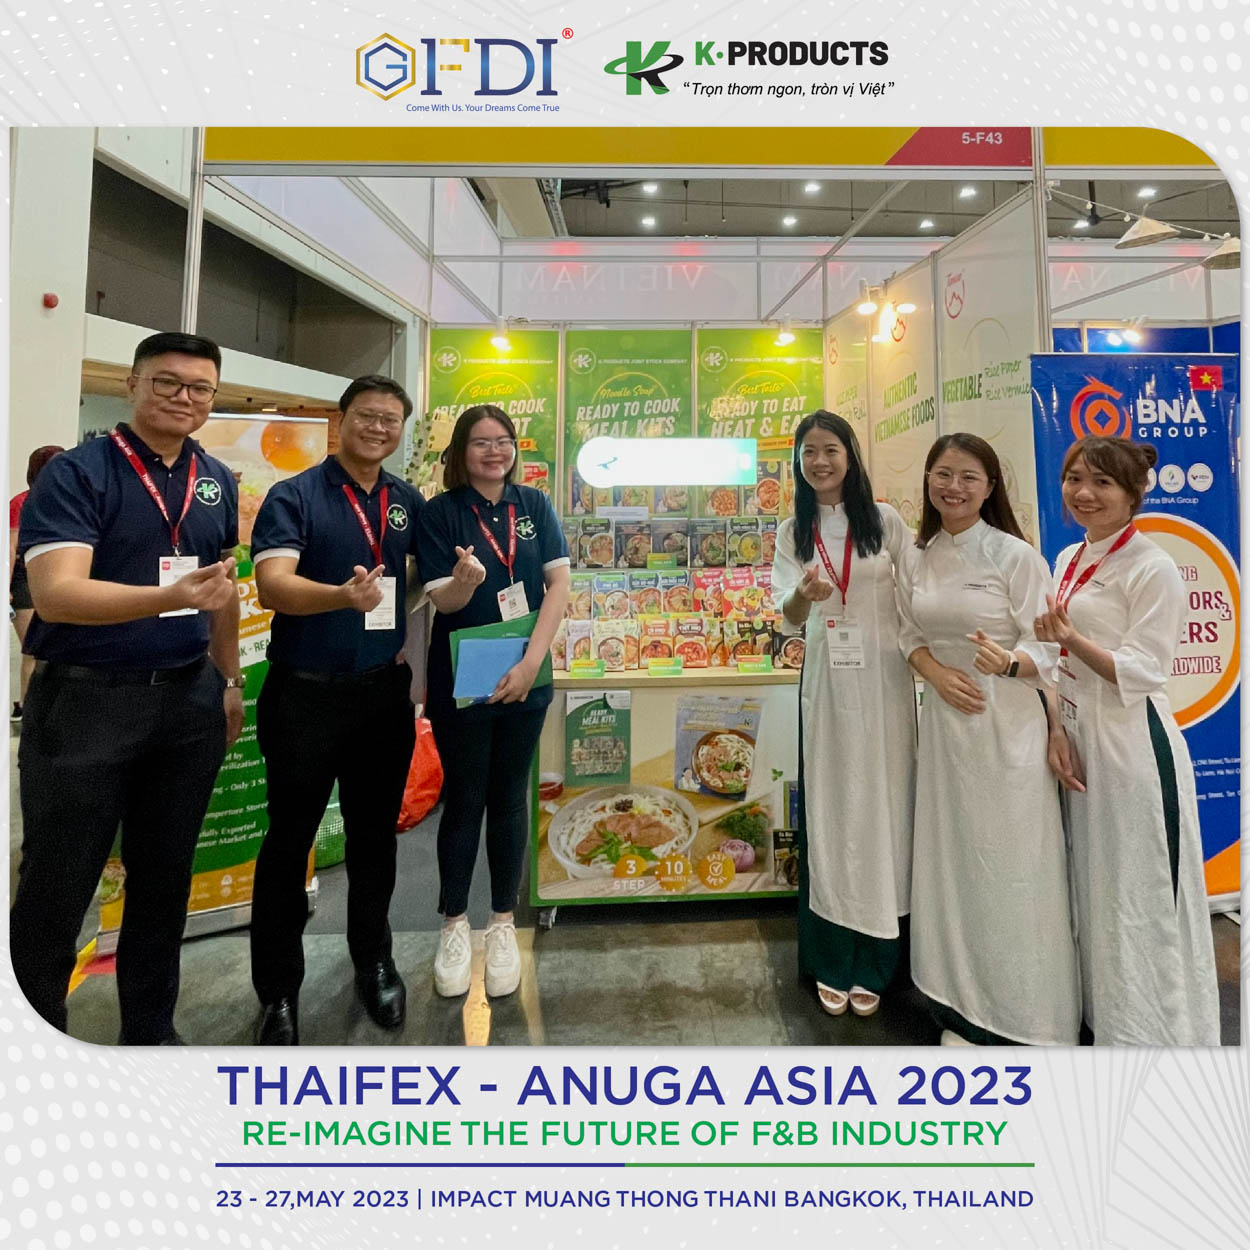 Dự án K-Products của GFDI nhận được nhiều phản hồi tích cực tại Hội Chợ Thaifex 2023